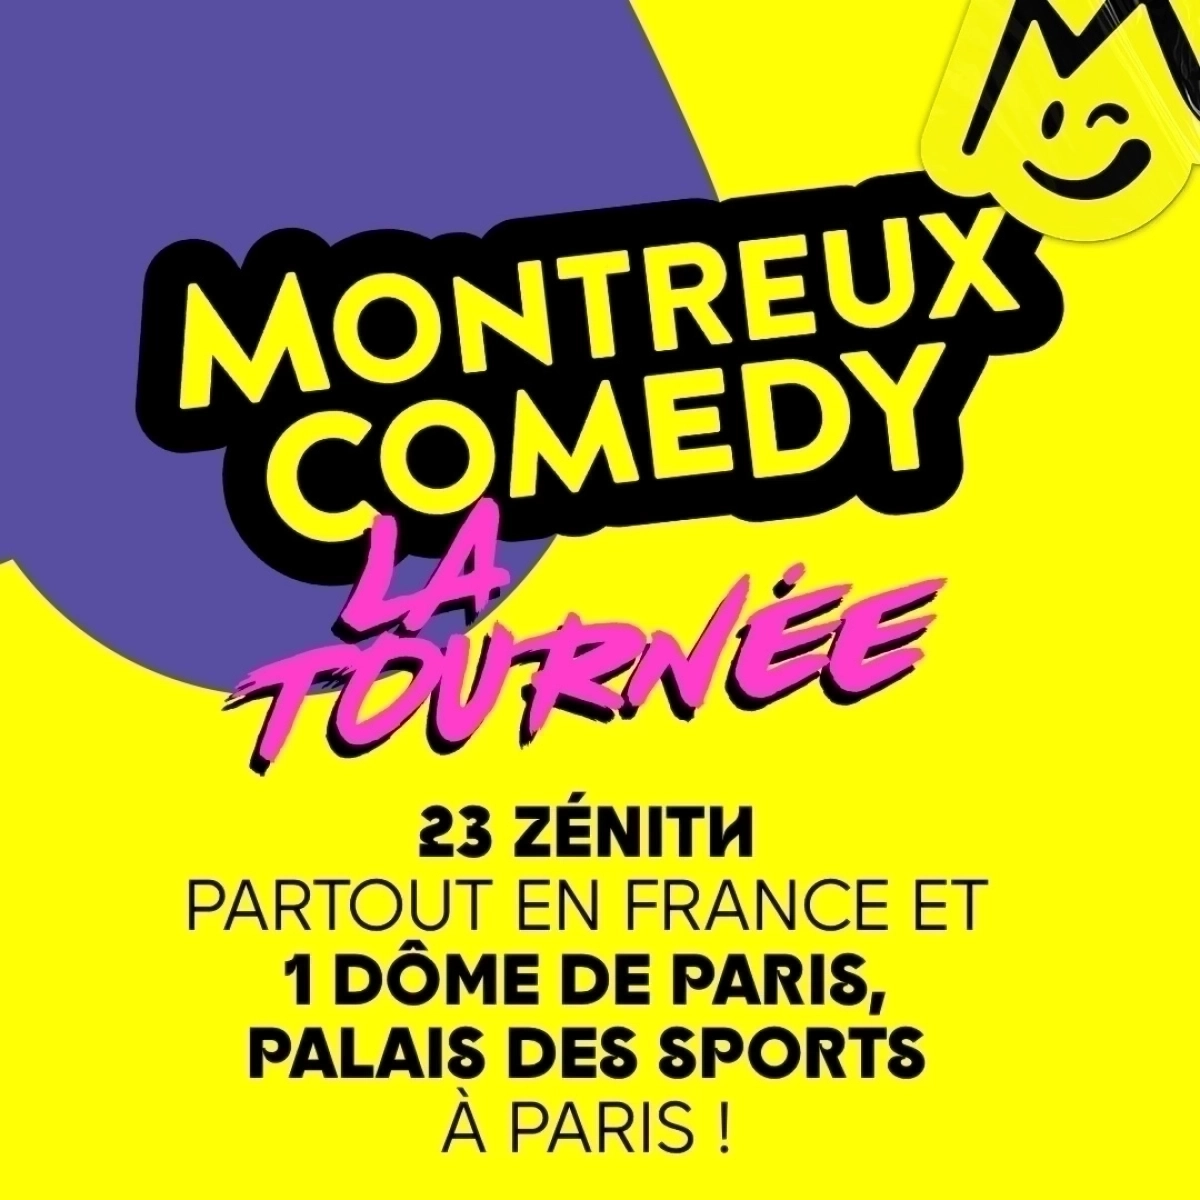 Montreux Comedy - La Tournee al Zenith Pau Tickets